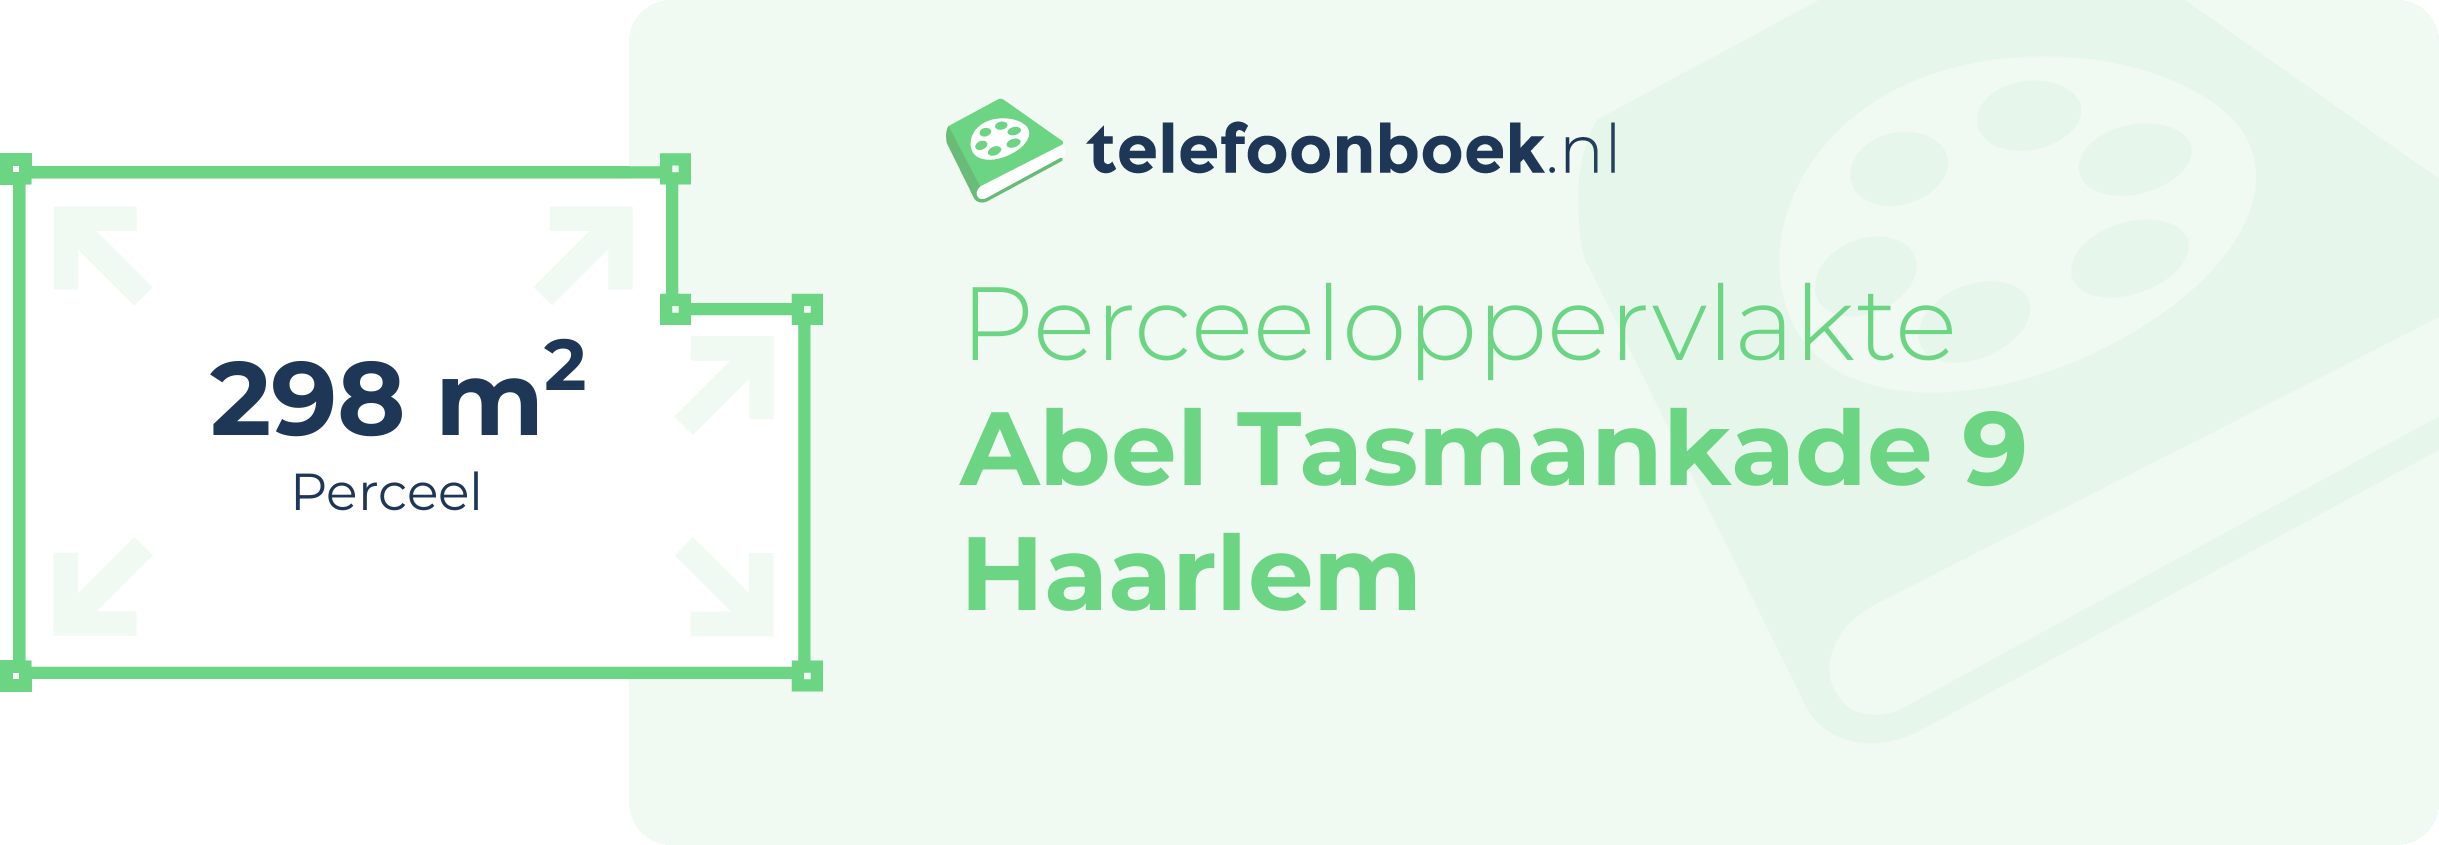 Perceeloppervlakte Abel Tasmankade 9 Haarlem